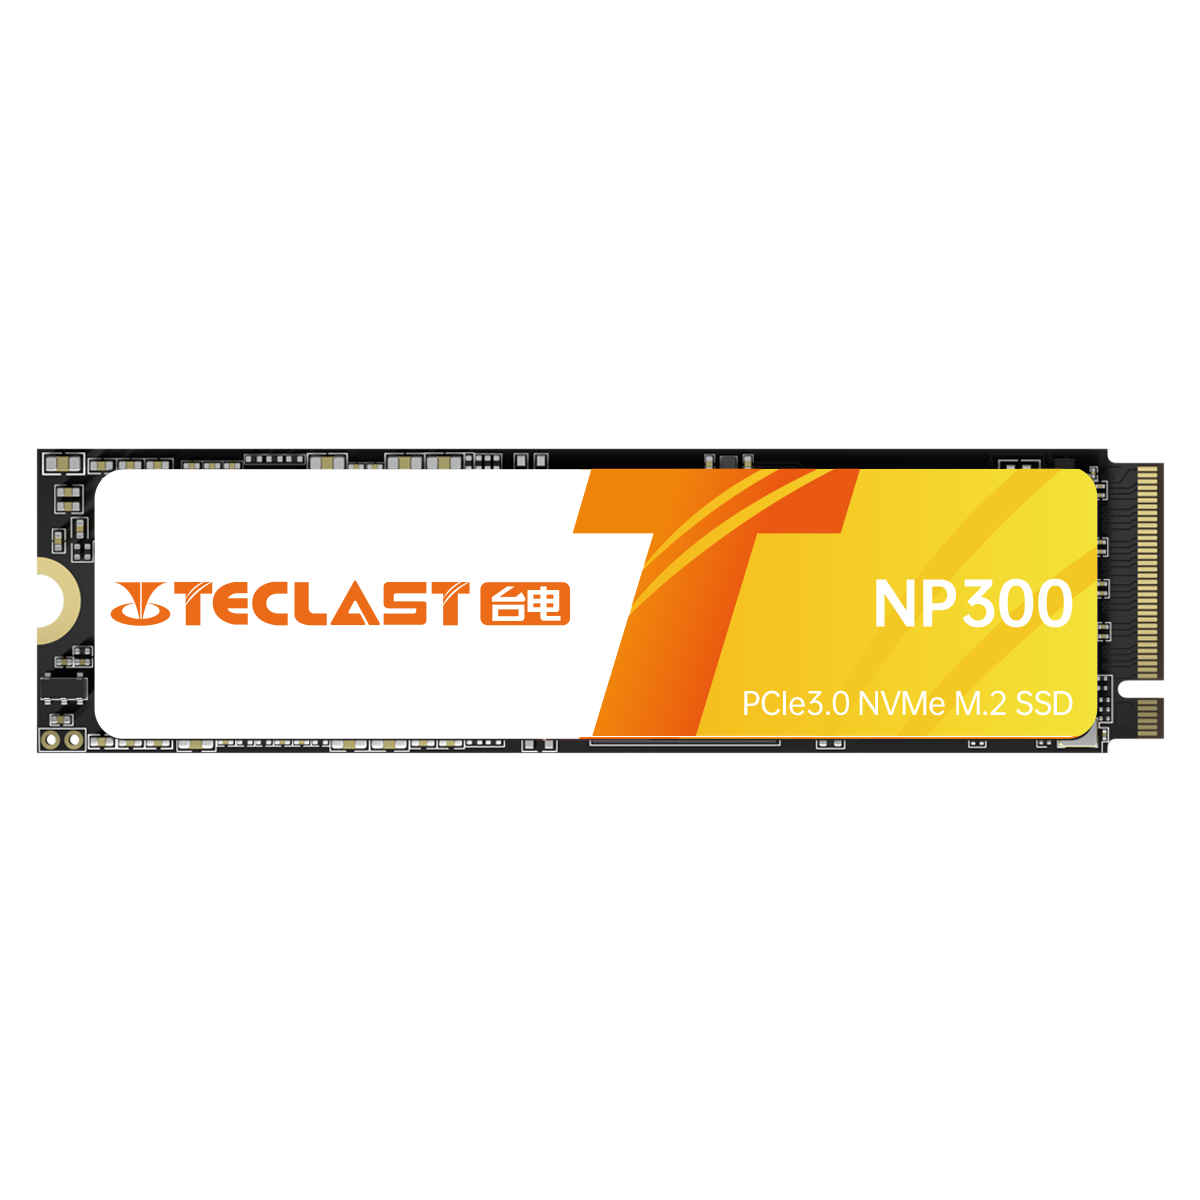 NP300 NVMe SSD